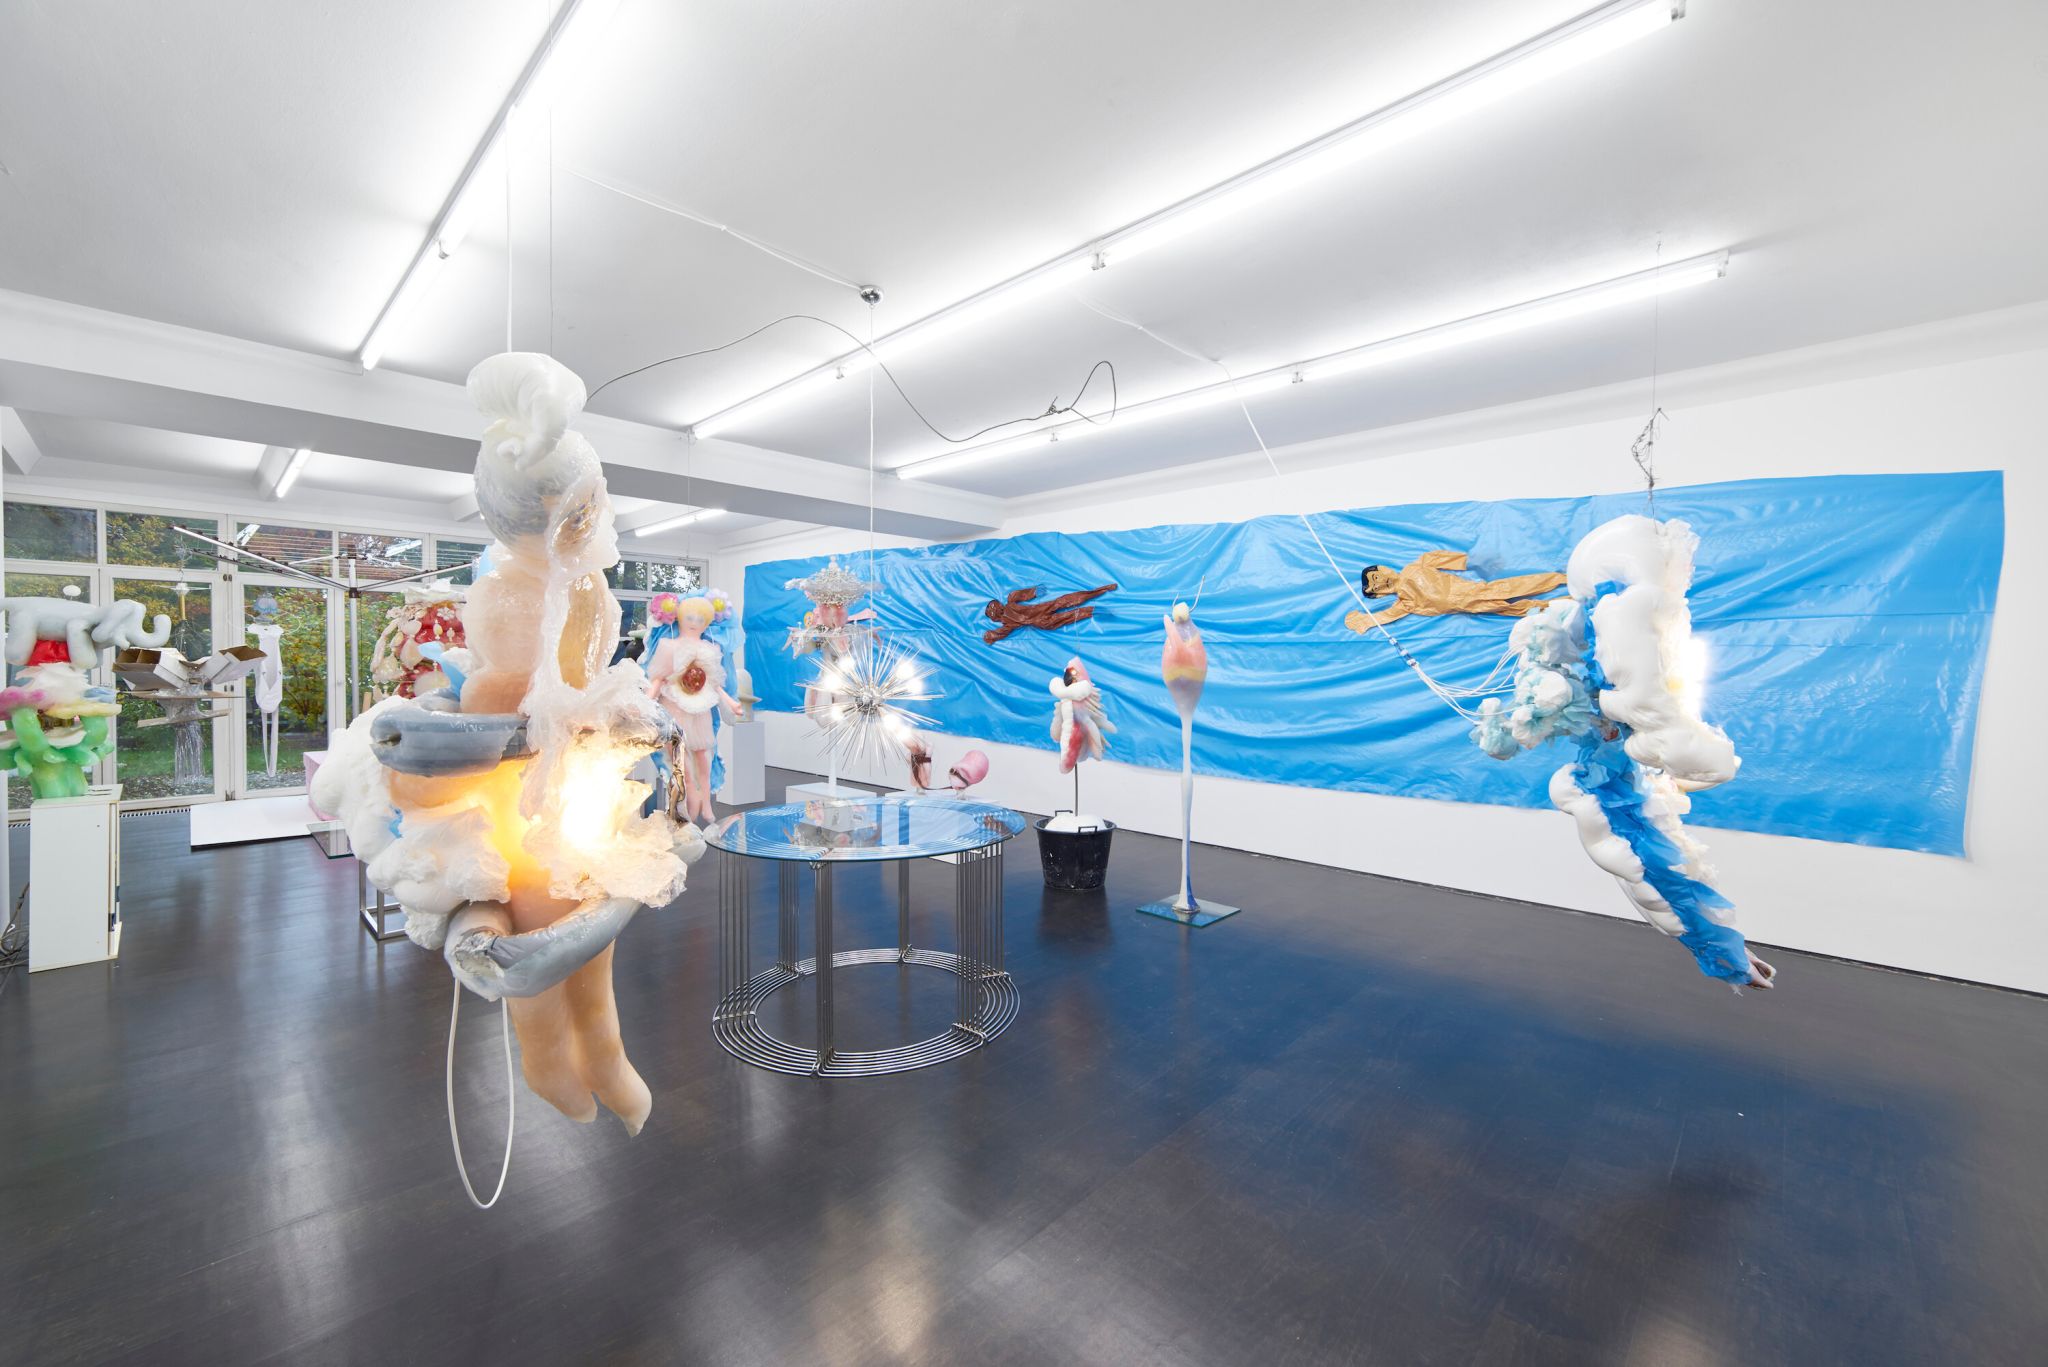 Installation view, Eric Sidner, Der blonde Affe, Deborah Schamoni, 2016